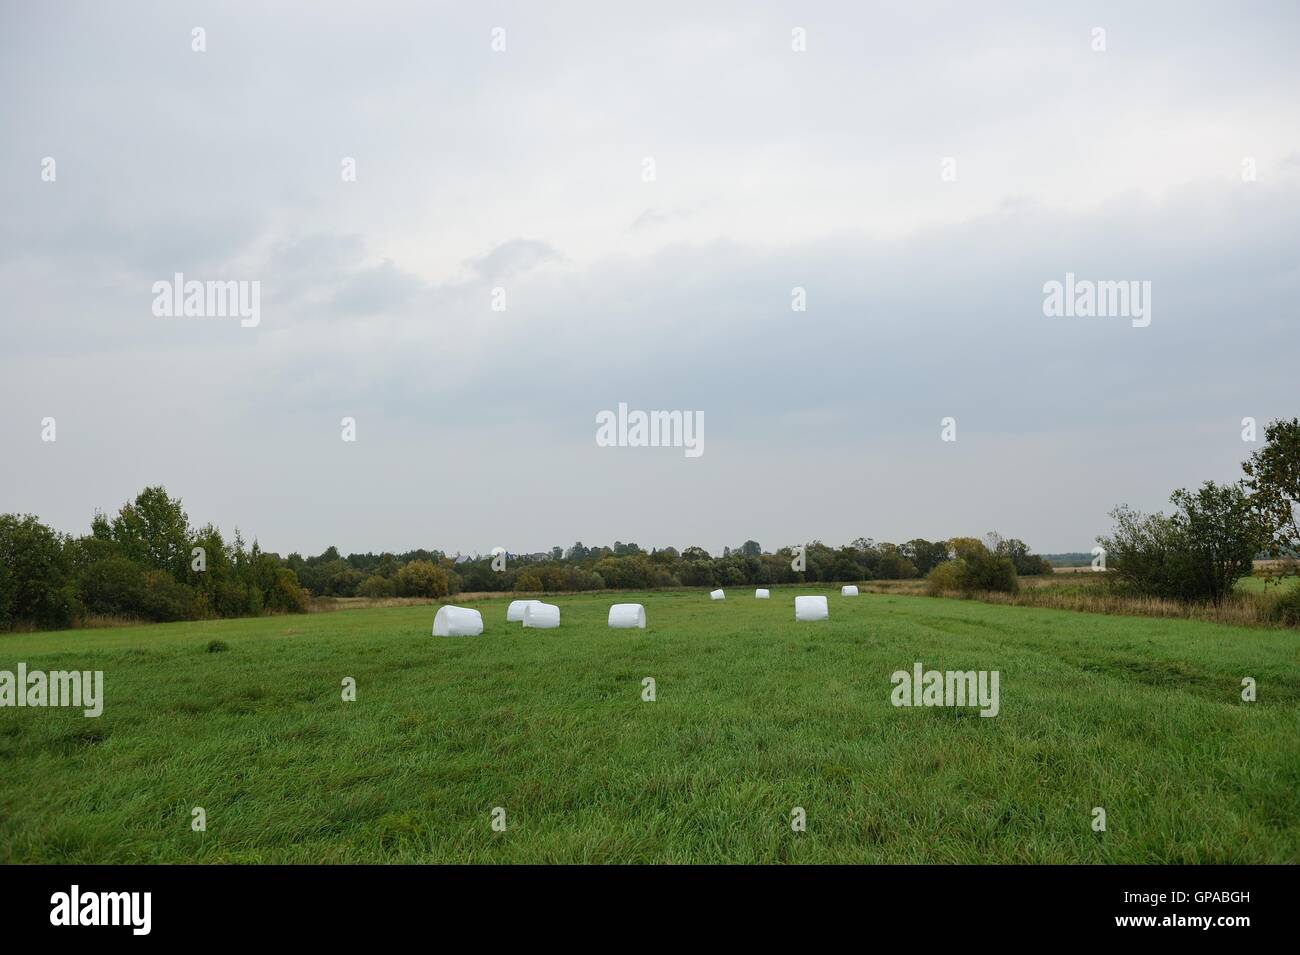 Original und seltsame Landschaft mit Grass verpackt in Ballen aus Polyethylen gefertigt. Stockfoto